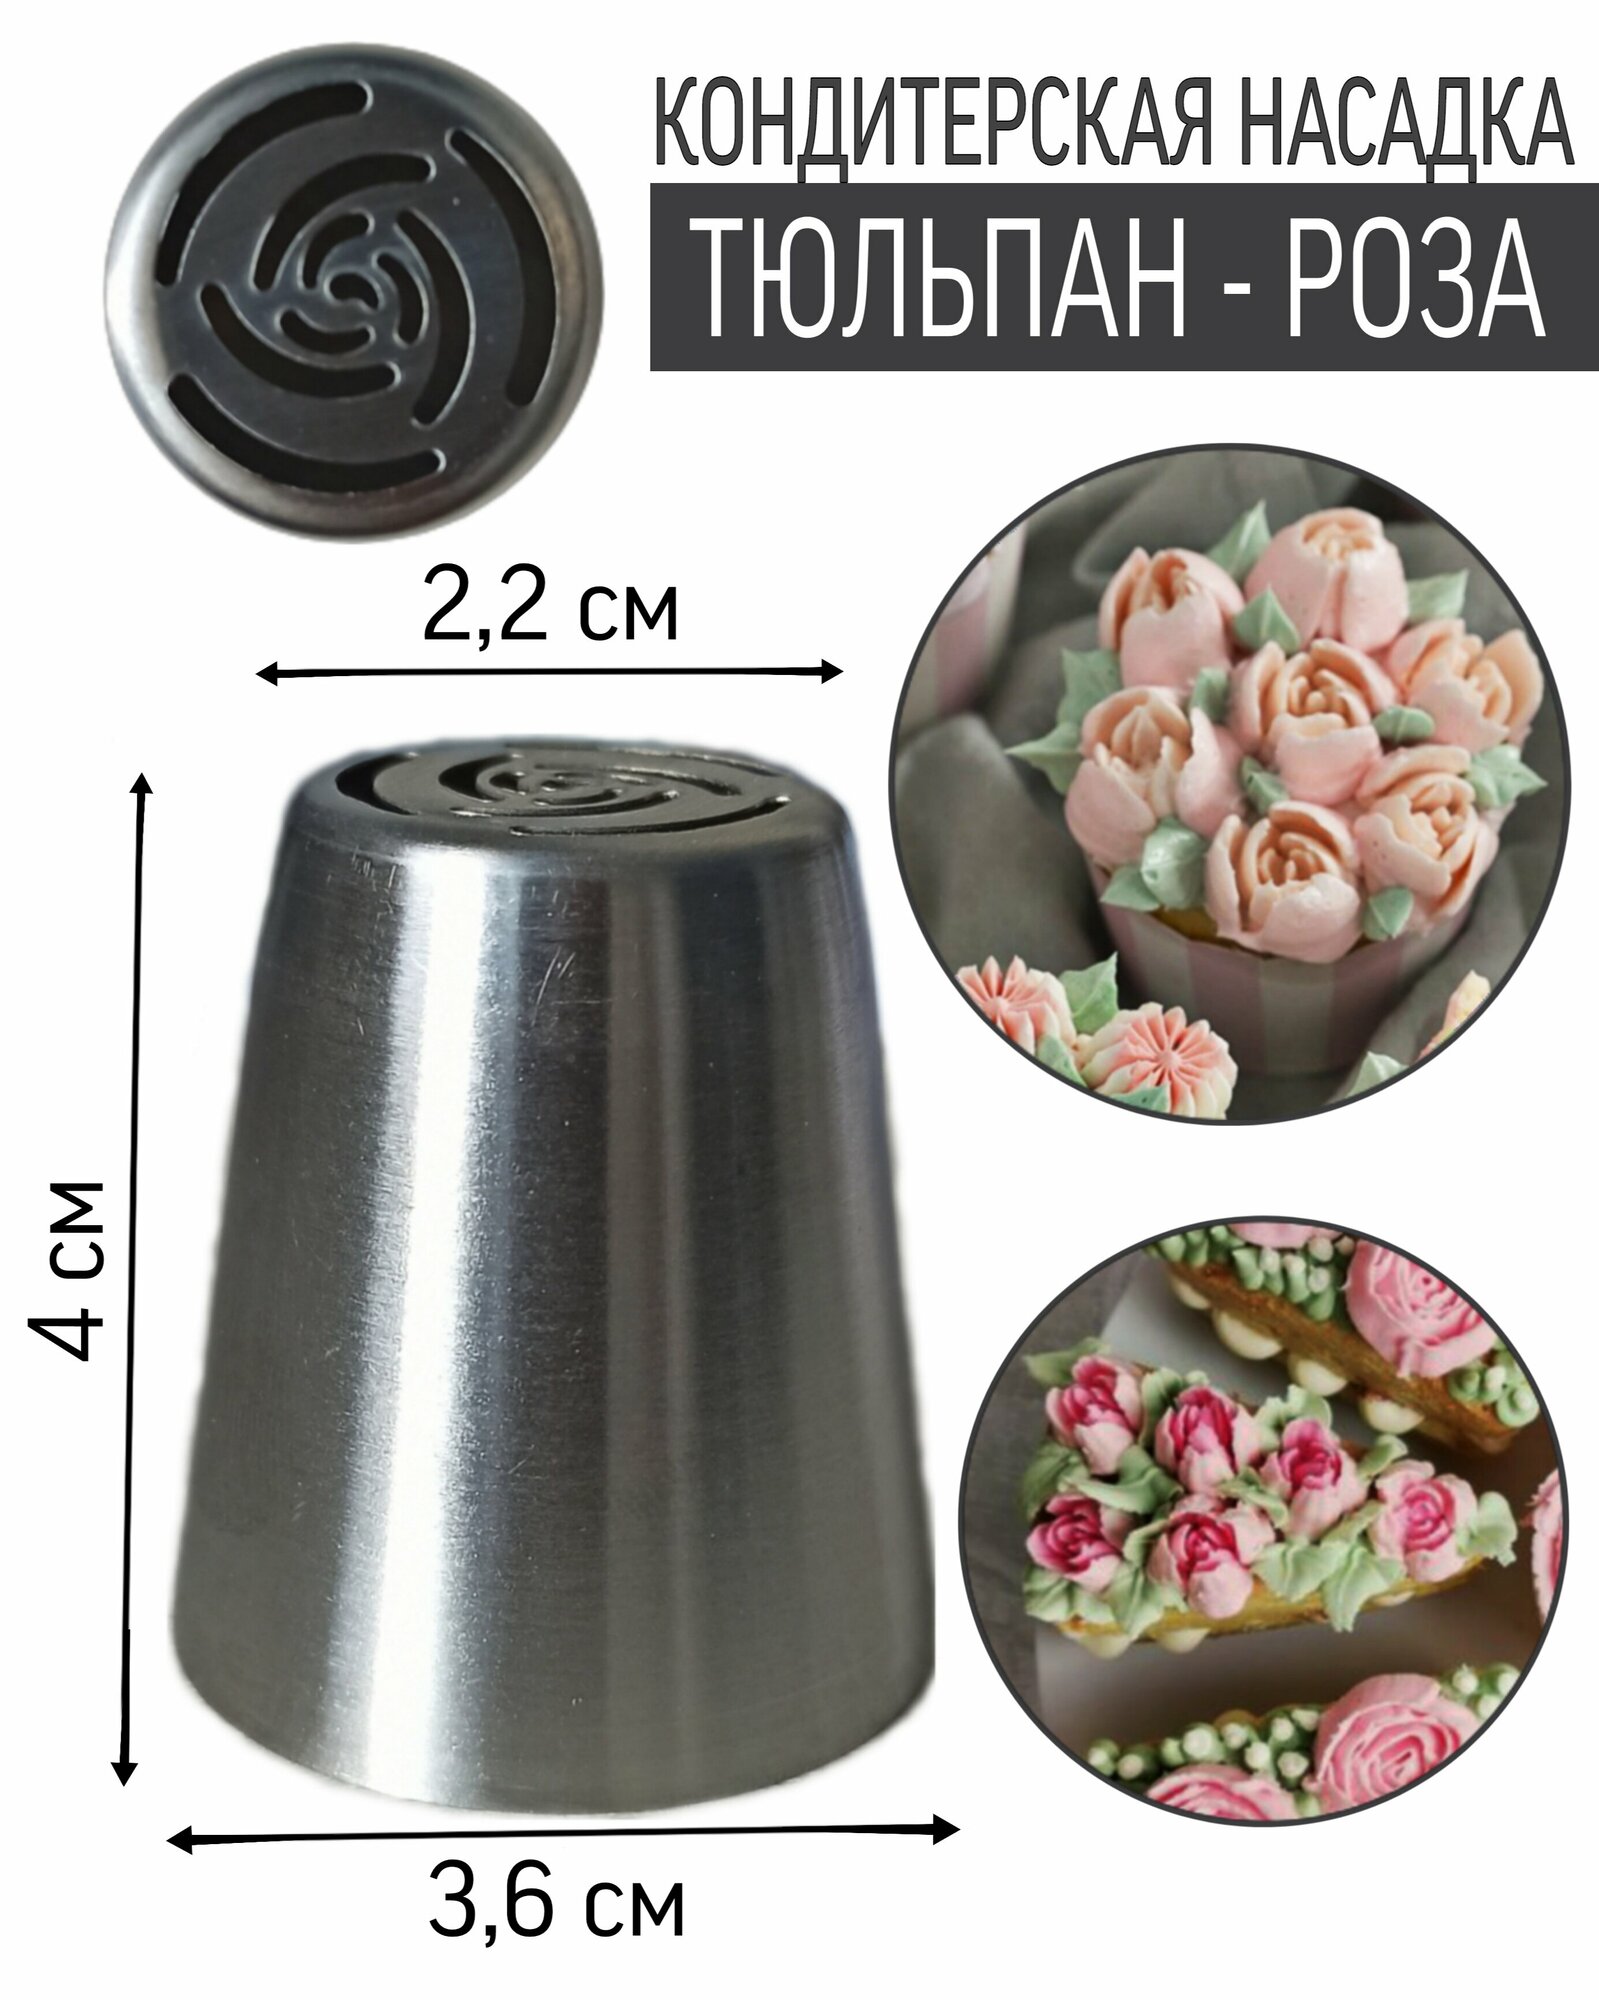 Кондитерская насадка "Тюльпан/Роза" 2